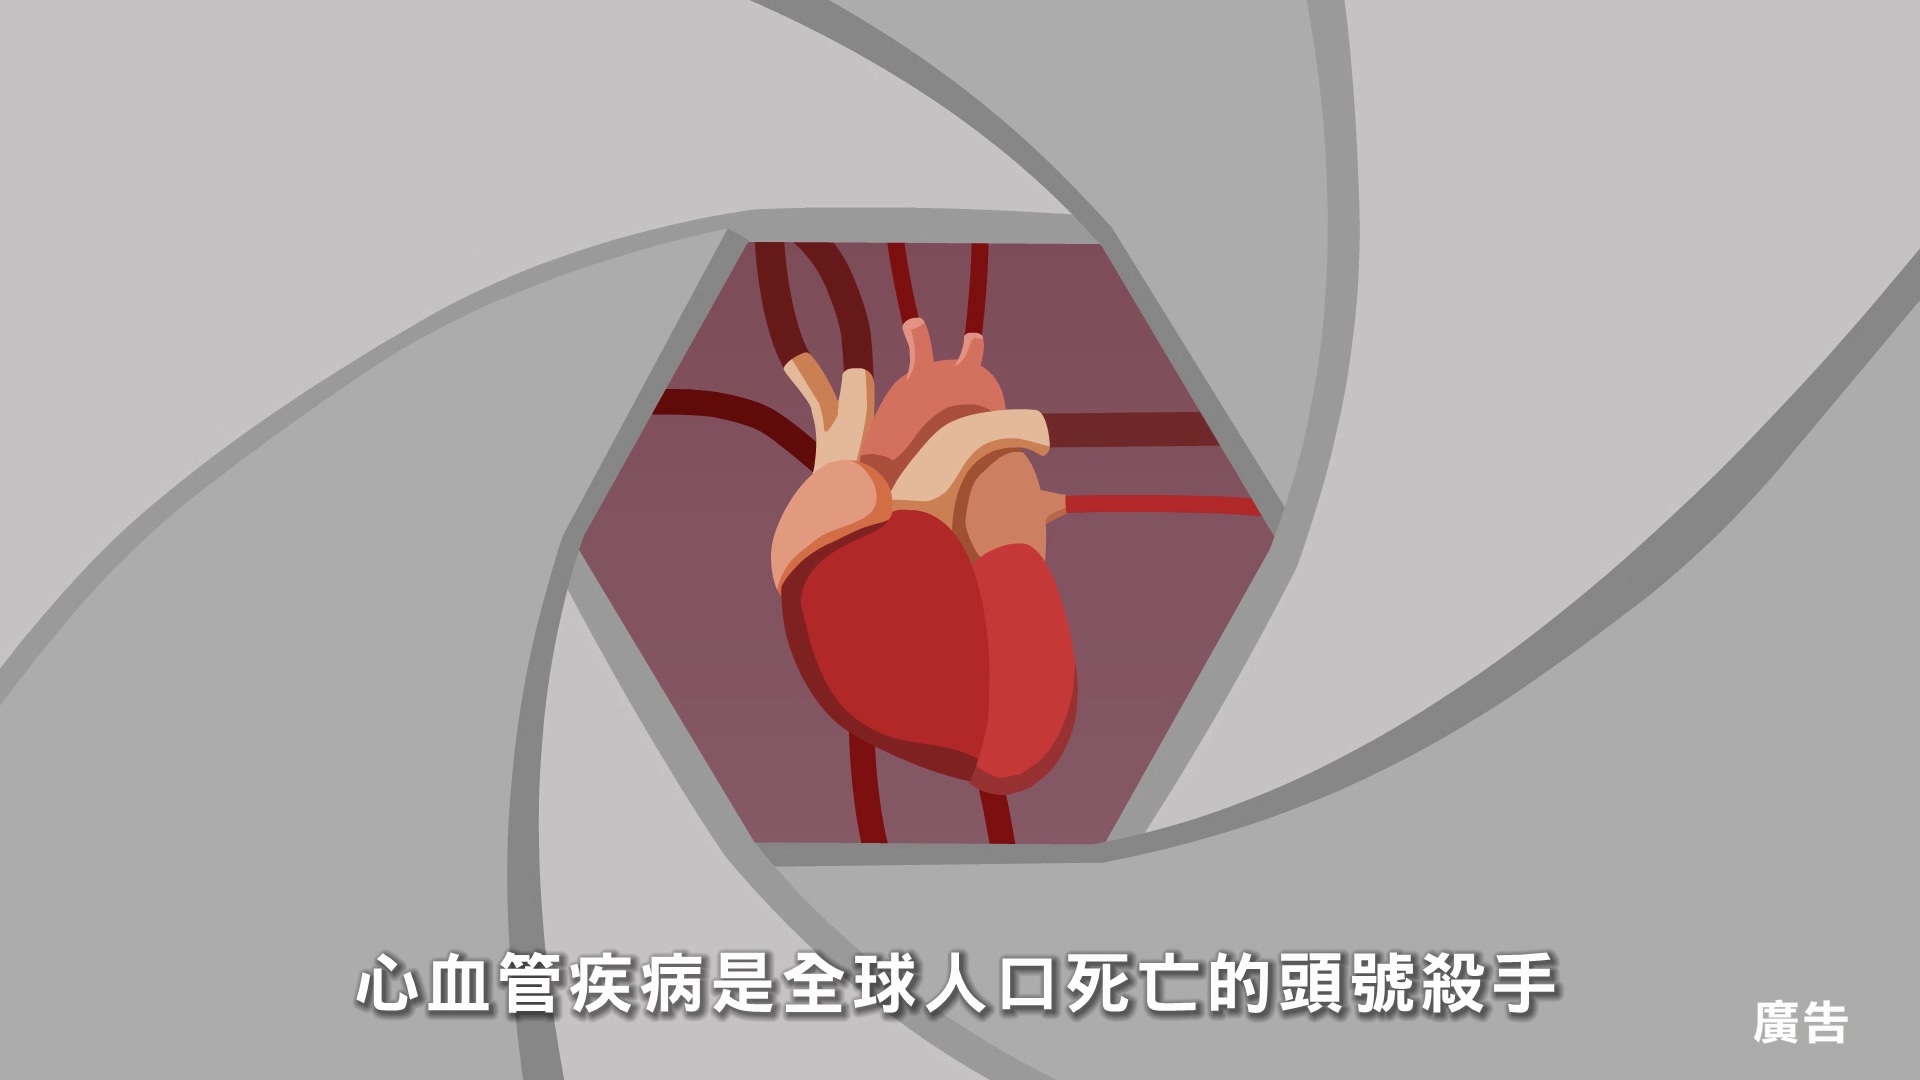 預防心血管疾病 危險因子篇30秒短片(台語)文章照片